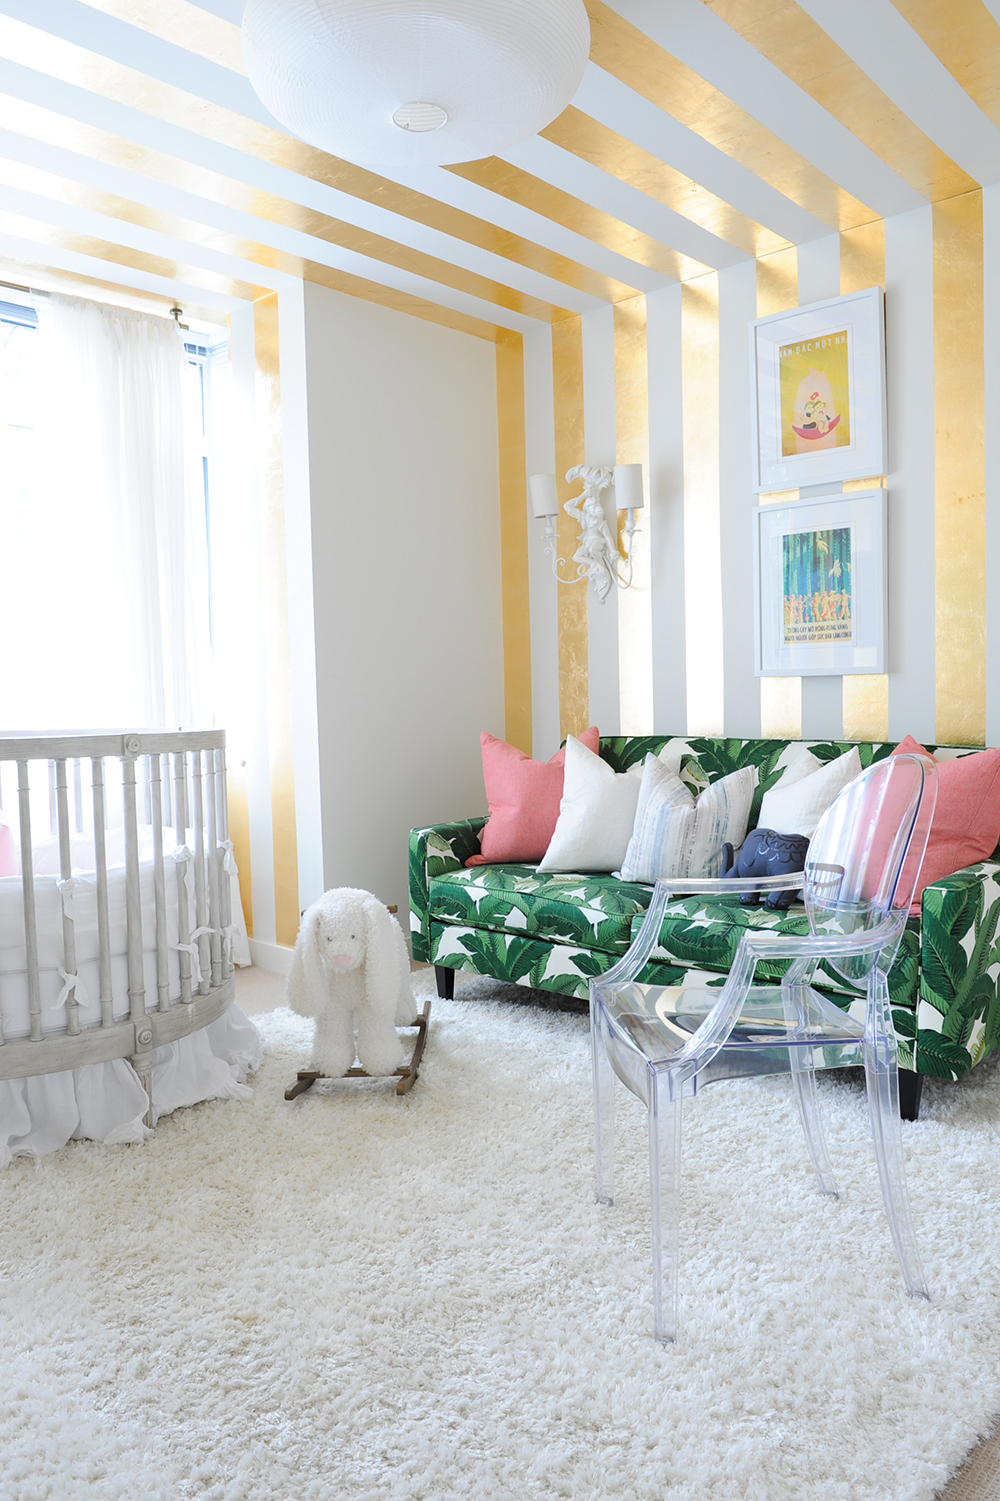 A stylish nursery featuring stripes of gold leaf.